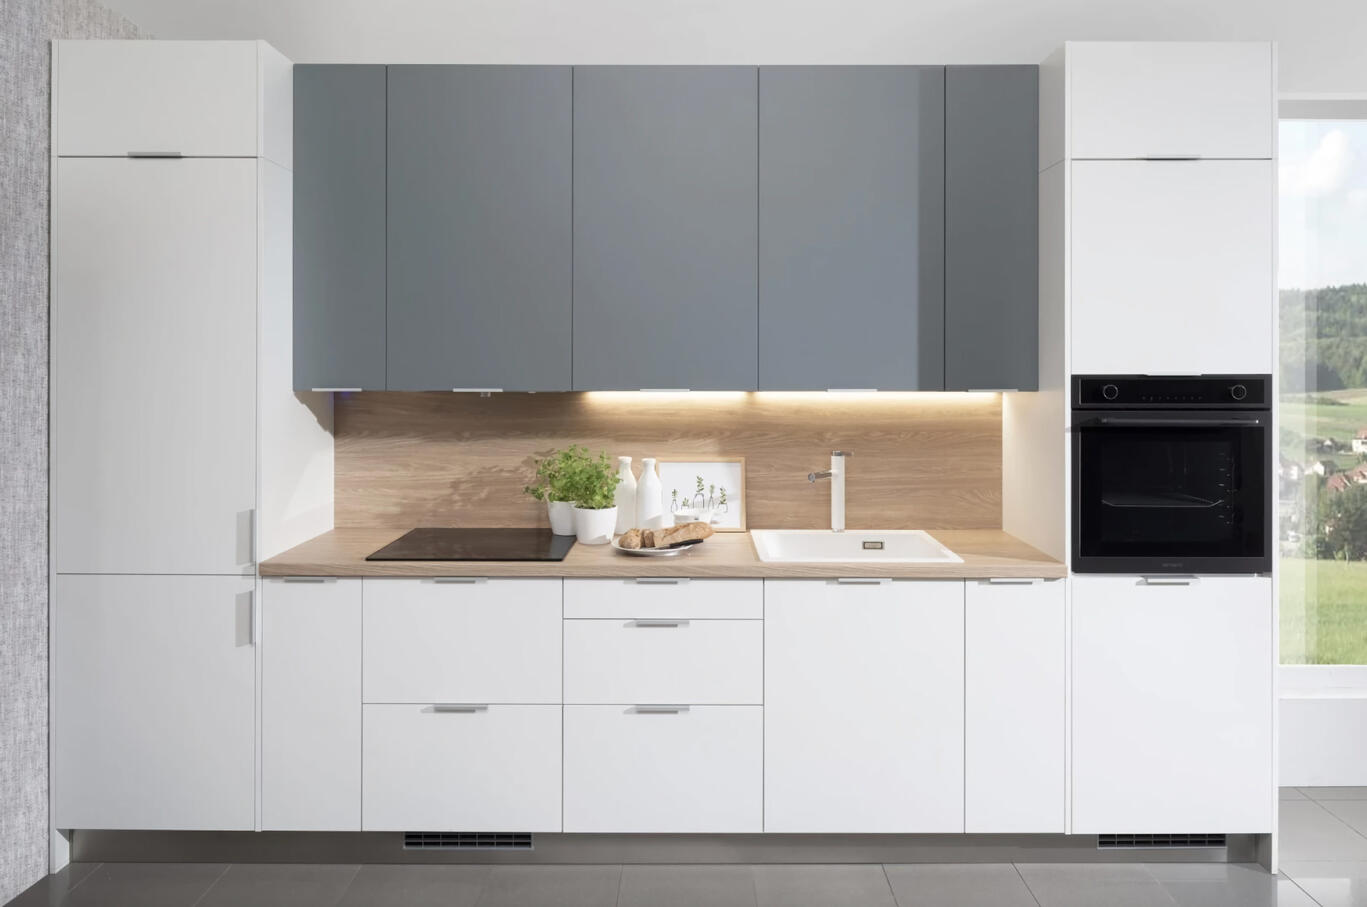 Moderná Decodom kuchyňa Home na mieru s bielymi skrinkami a drevenými akcentmi pre svetlý a vzdušný pocit.